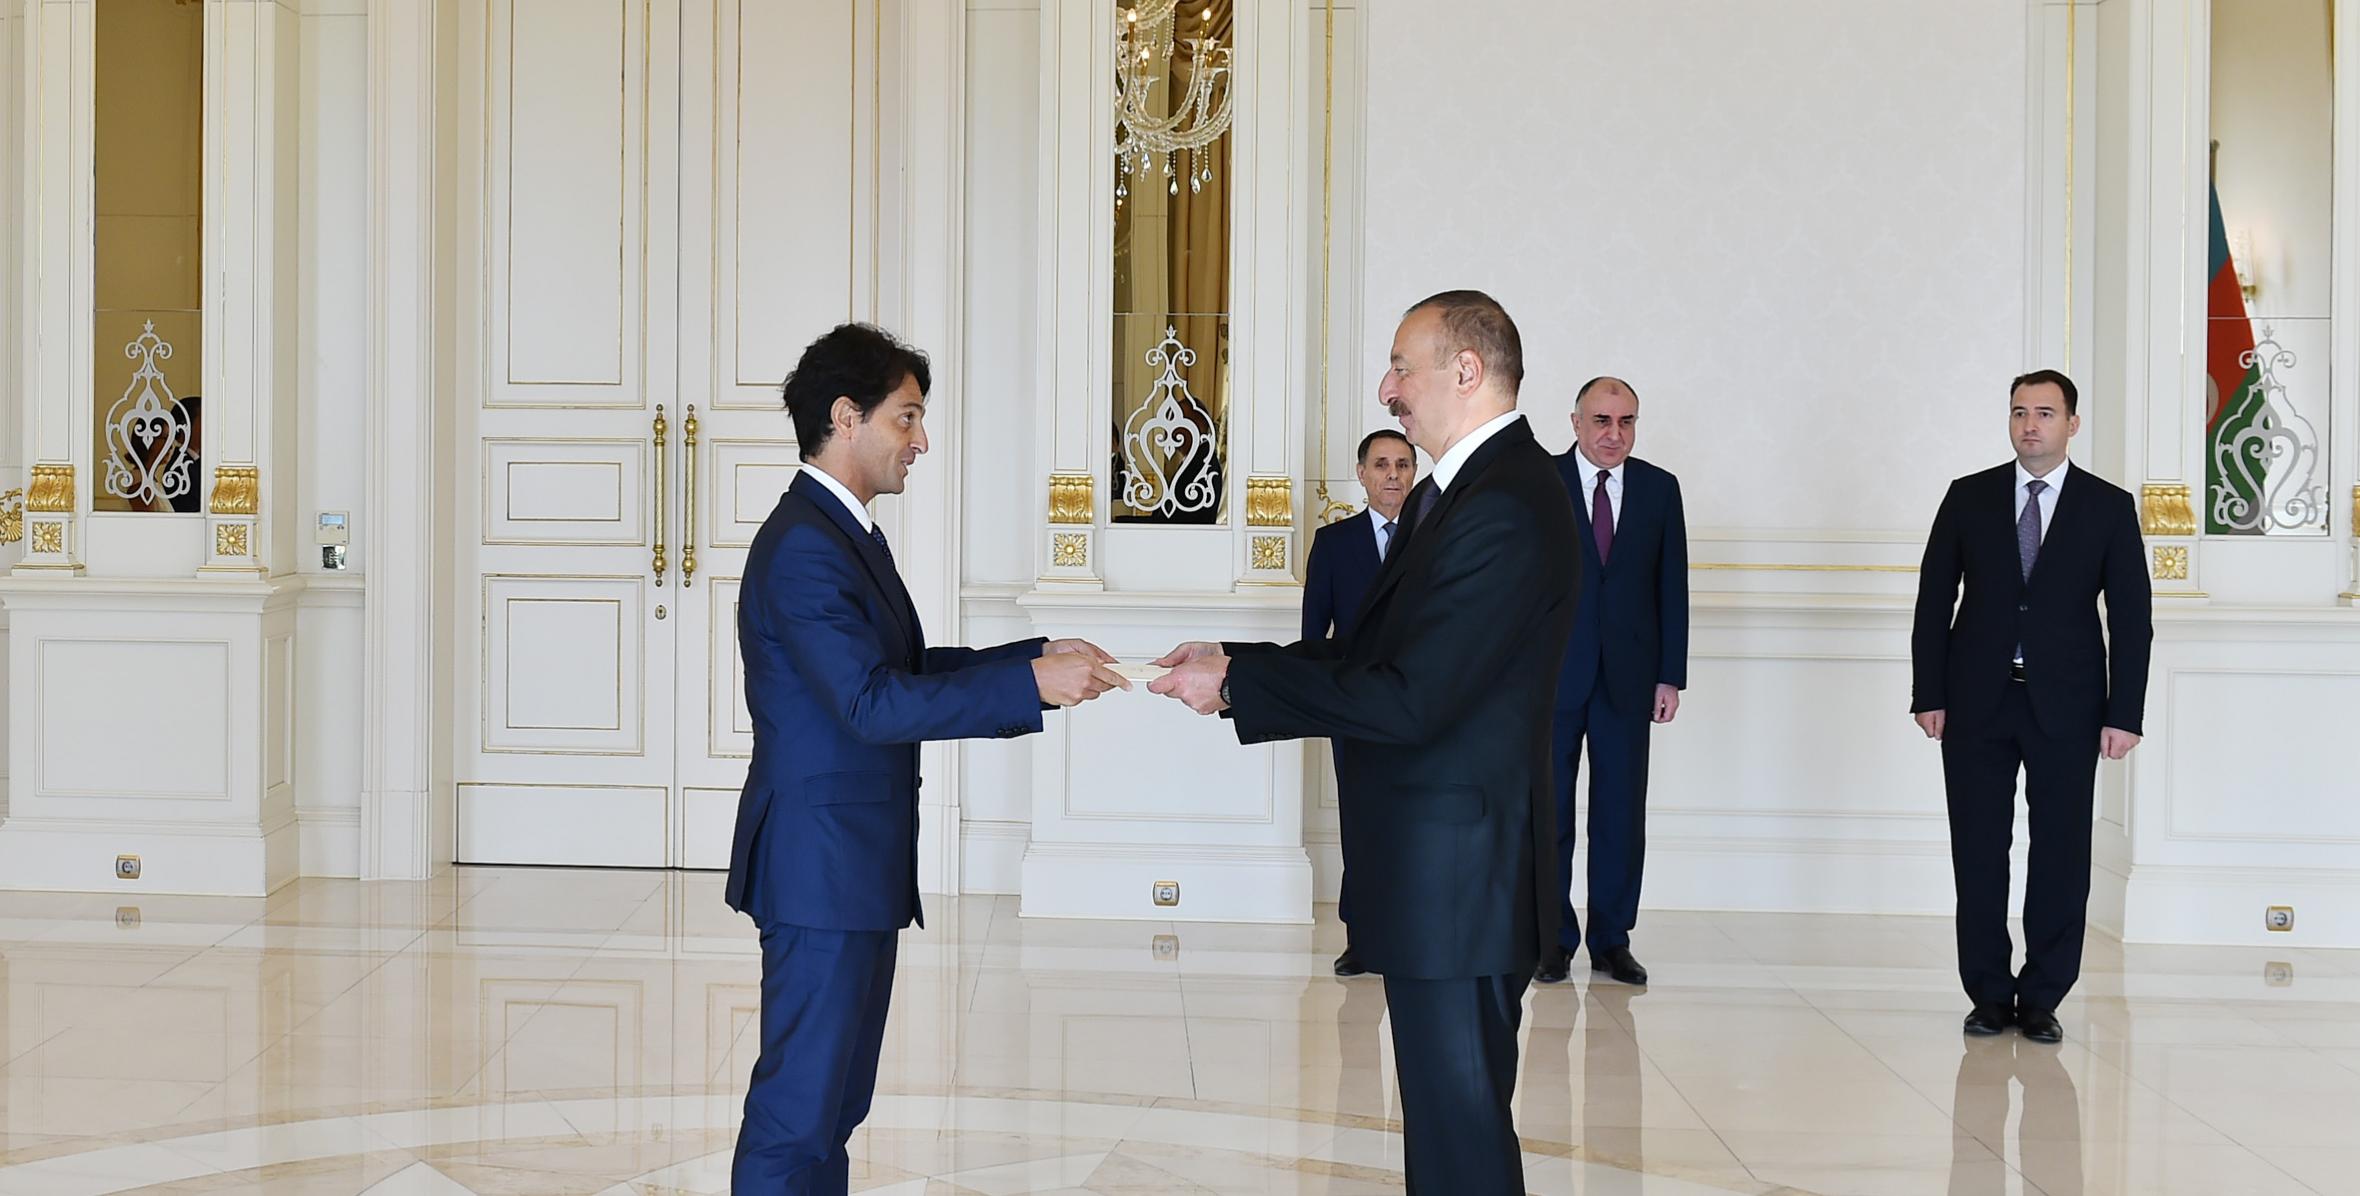 Ильхам Алиев принял верительные грамоты новоназначенного посла Италии в Азербайджане